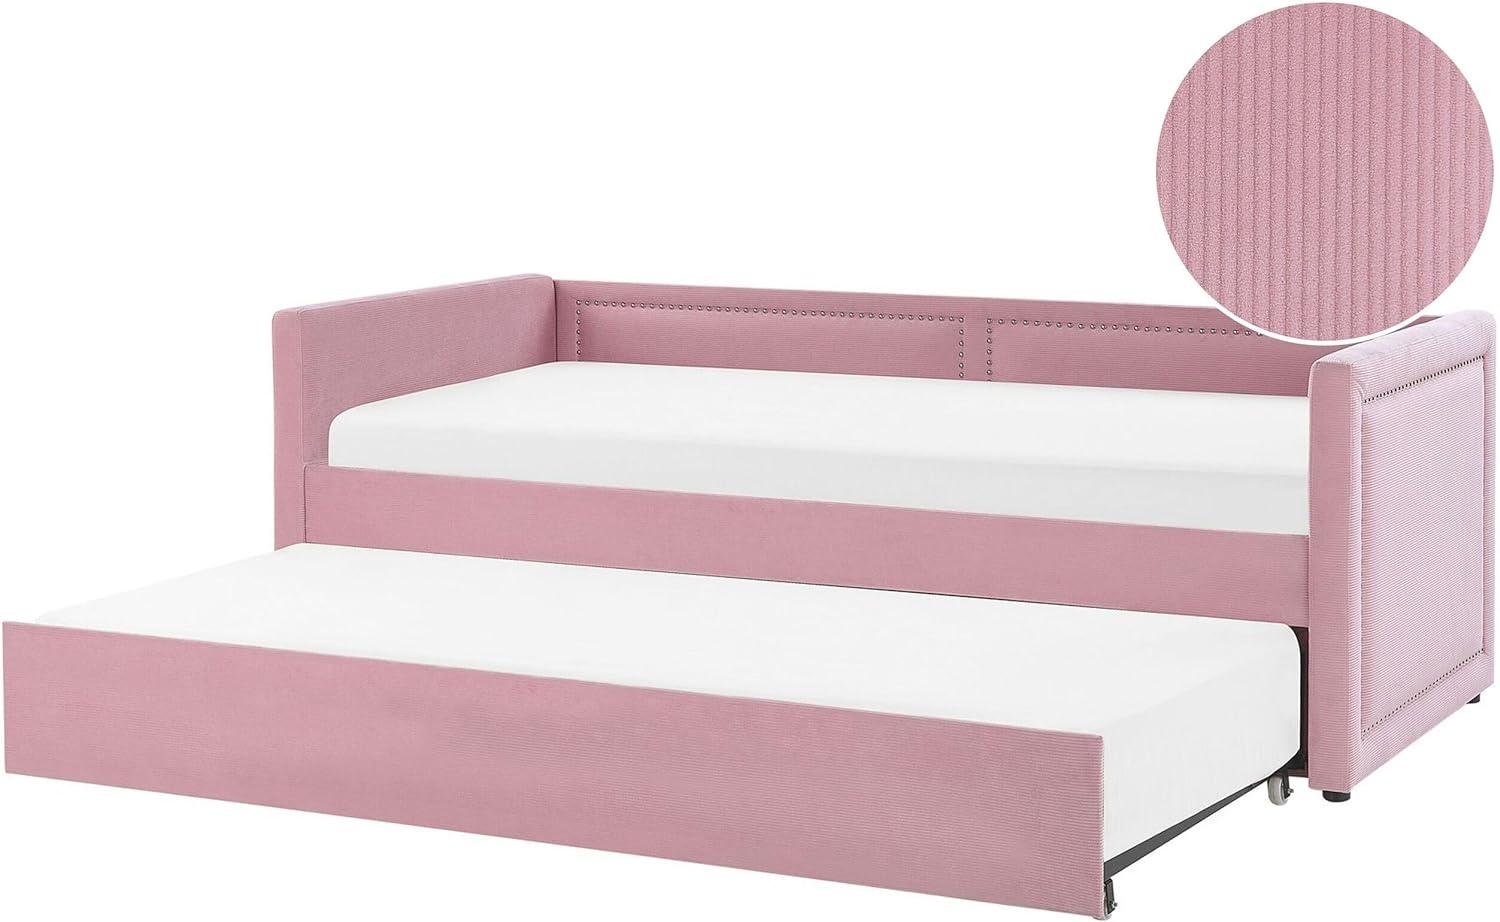 Tagesbett ausziehbar Samtstoff rosa Lattenrost 90 x 200 cm MIMIZAN Bild 1